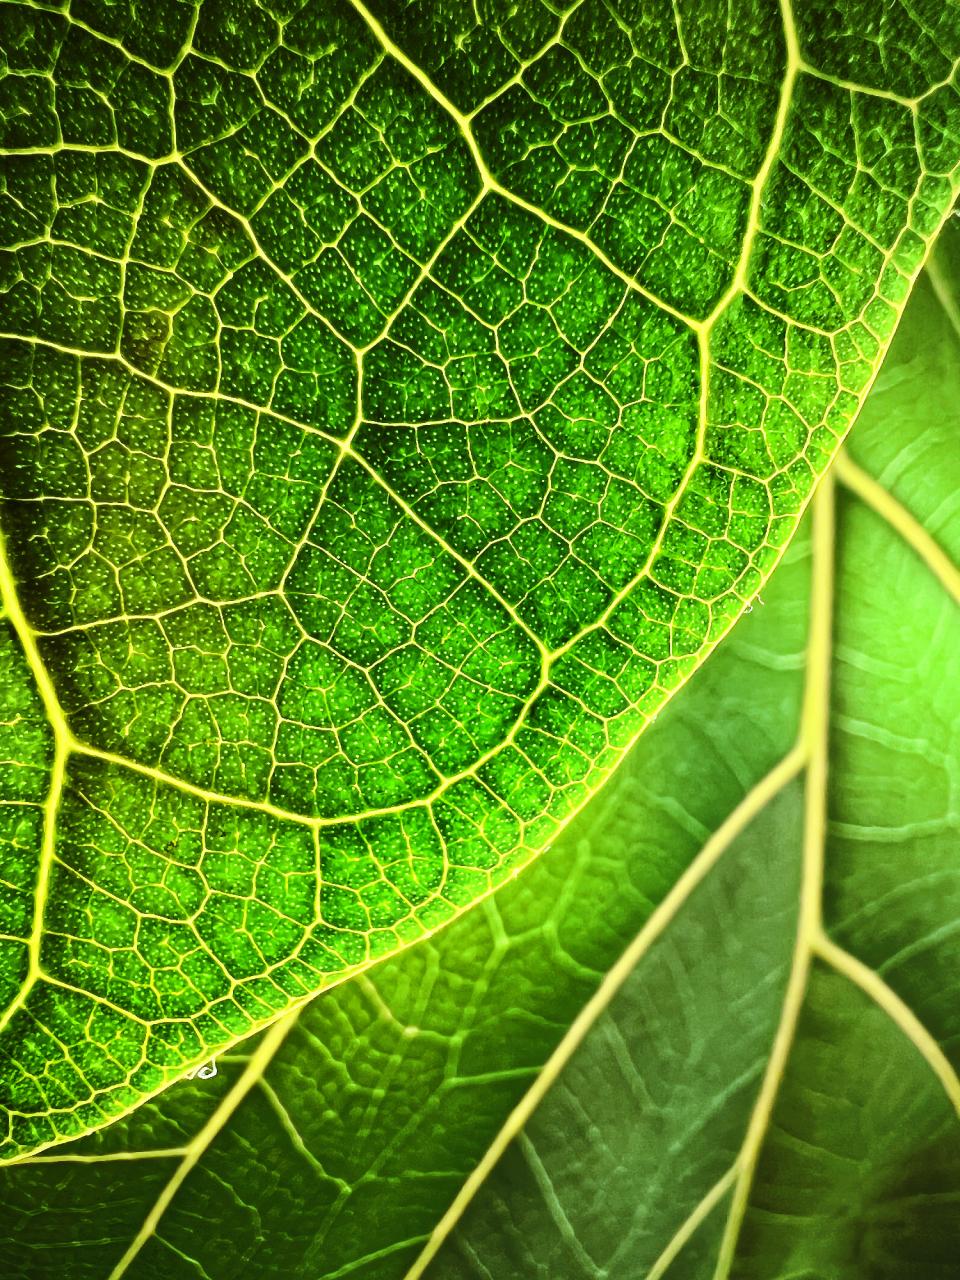 Células diminutas de hojas durante la hora dorada capturadas con el iPhone 13 Pro por Trevor Collins de Boston, EE. UU.